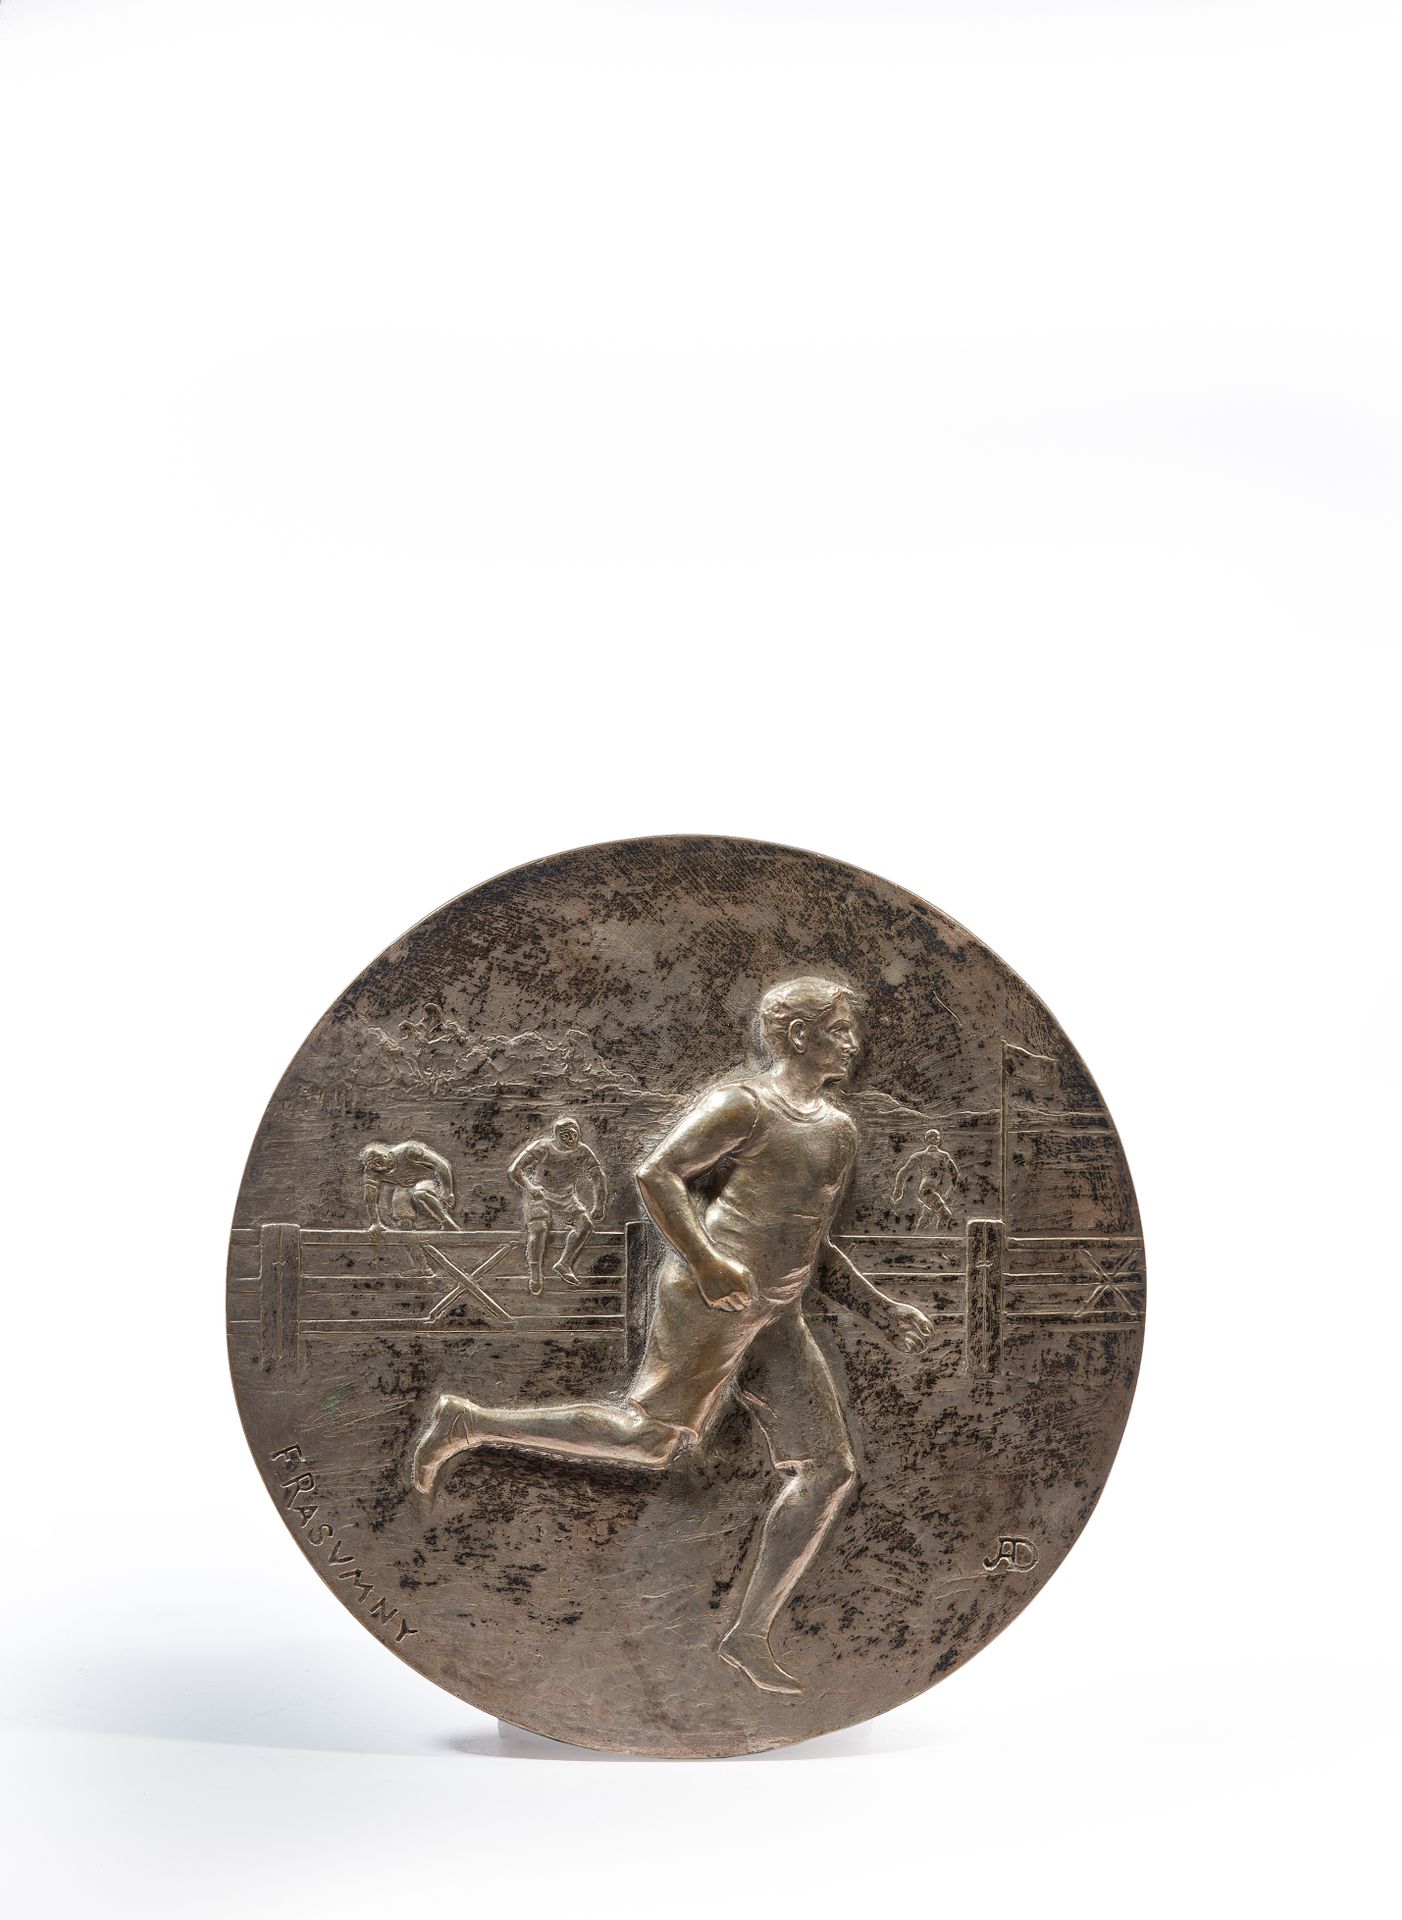 Null 费利克斯-拉苏姆尼(1869-1940)

步行比赛

银色铜章左下方有签名，右下方有 "AD "字样。

直径19.5厘米